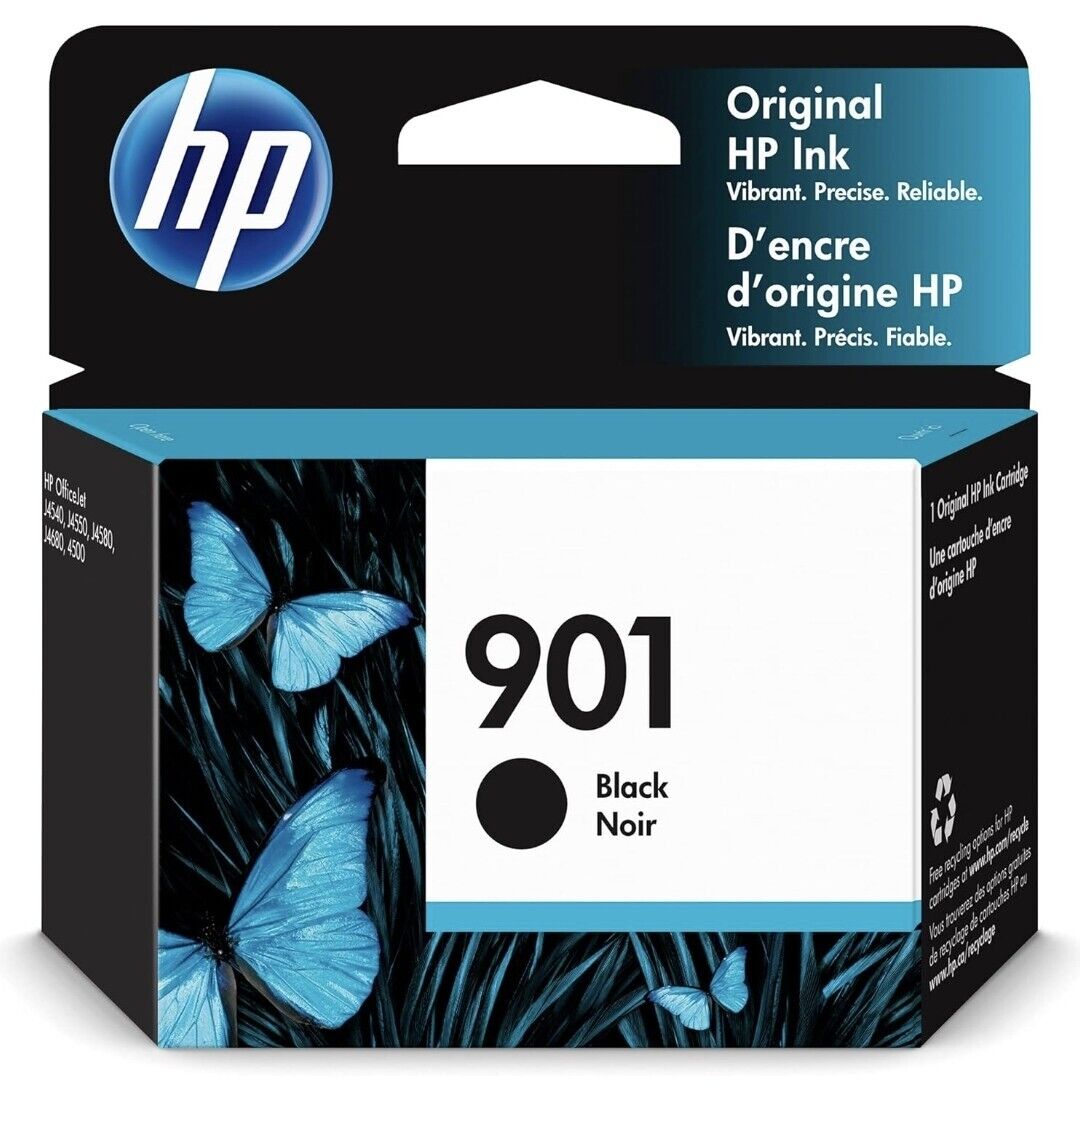 Genuine HP 901 Black Printer Ink Cartridge, New, Factory Sealed, EXP. Sep. 2023